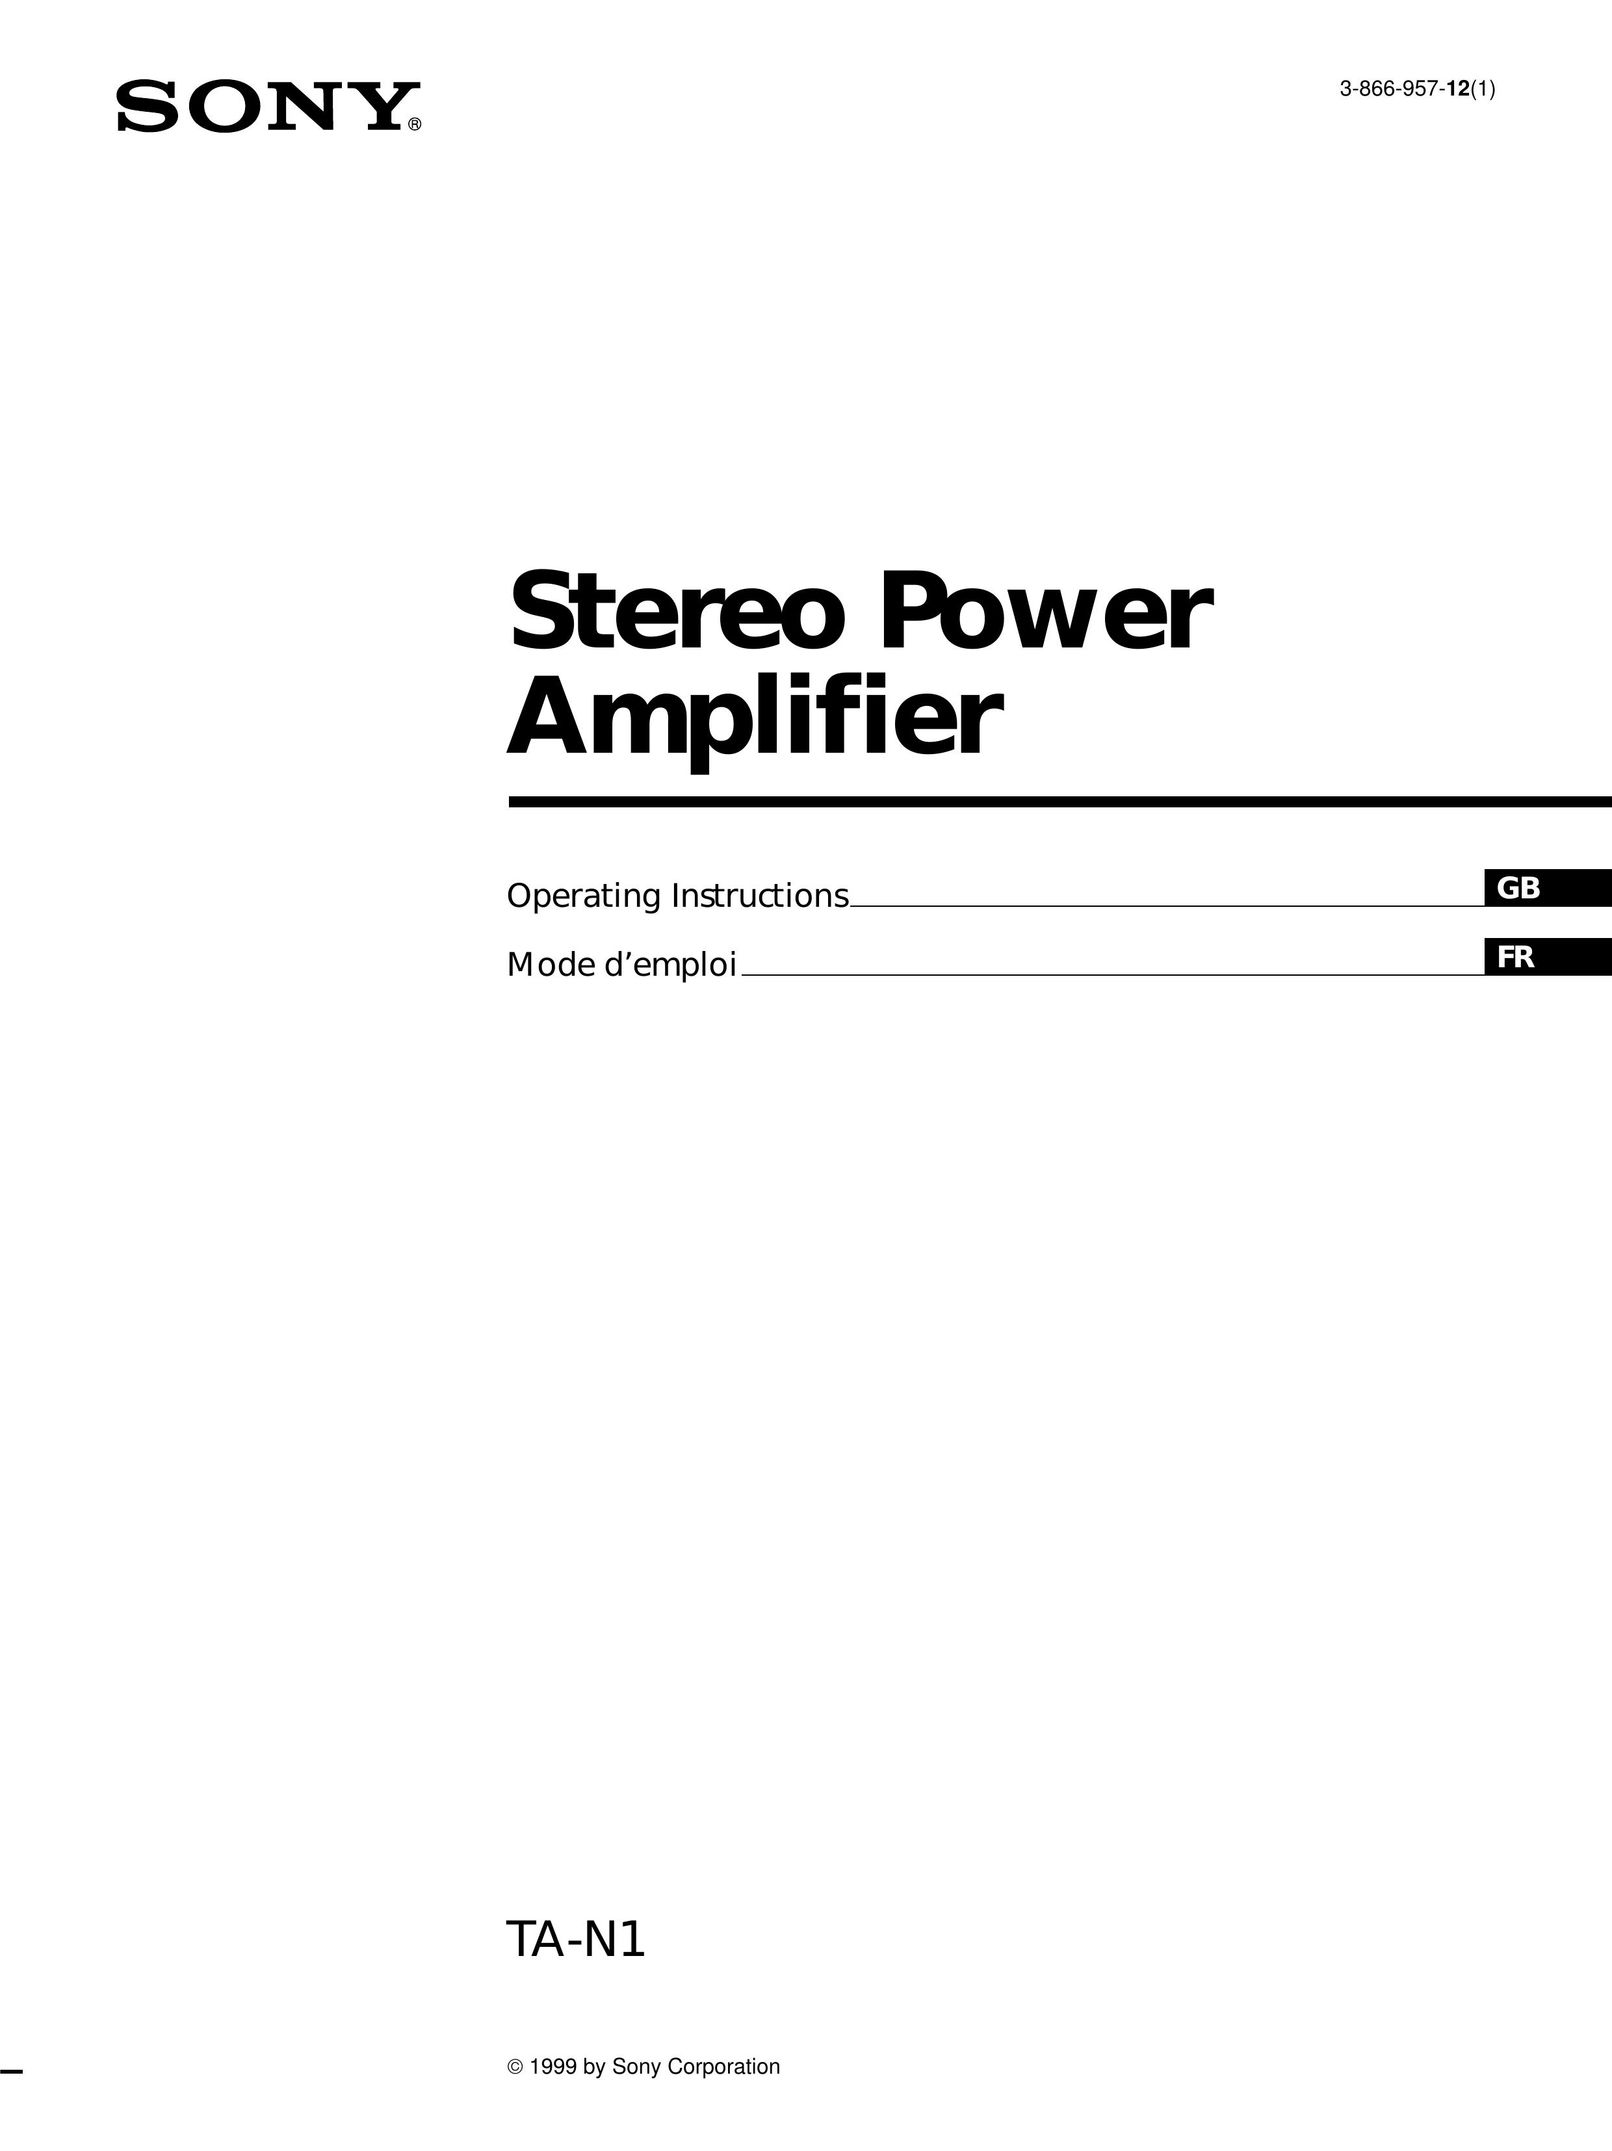 Sony TA-N1 Stereo Amplifier User Manual